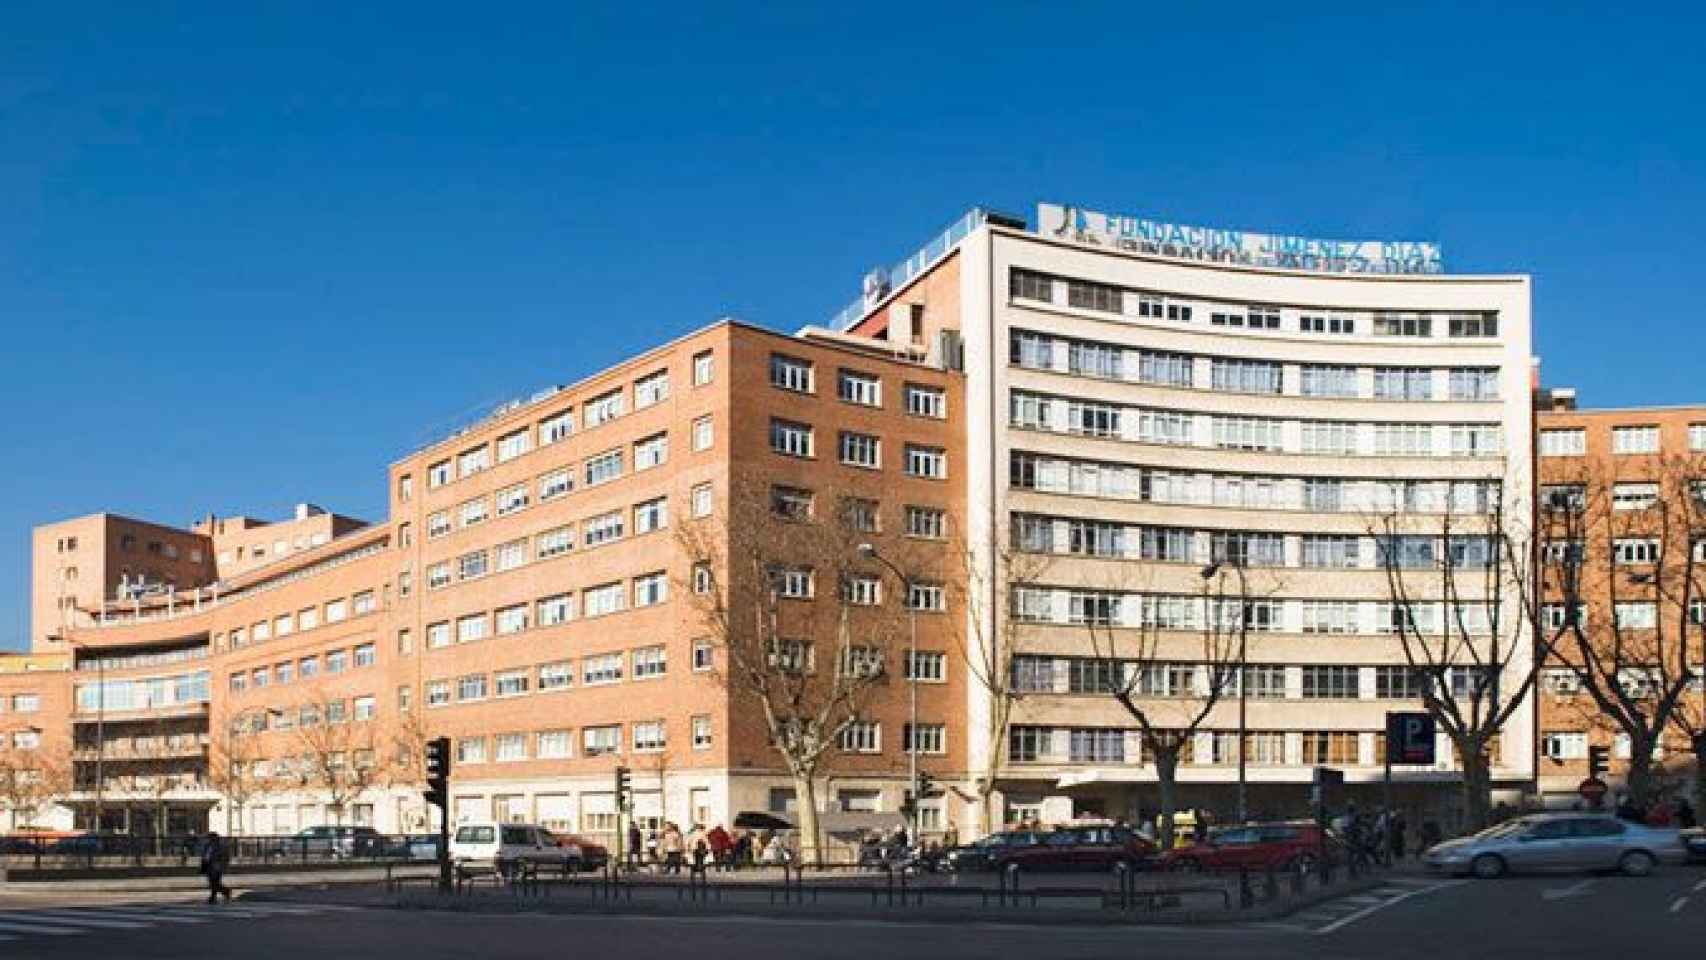 La Fundación Jiménez Díaz de Madrid, mejor hospital de España en cuatro especialidades analizadas por el IEH / CG